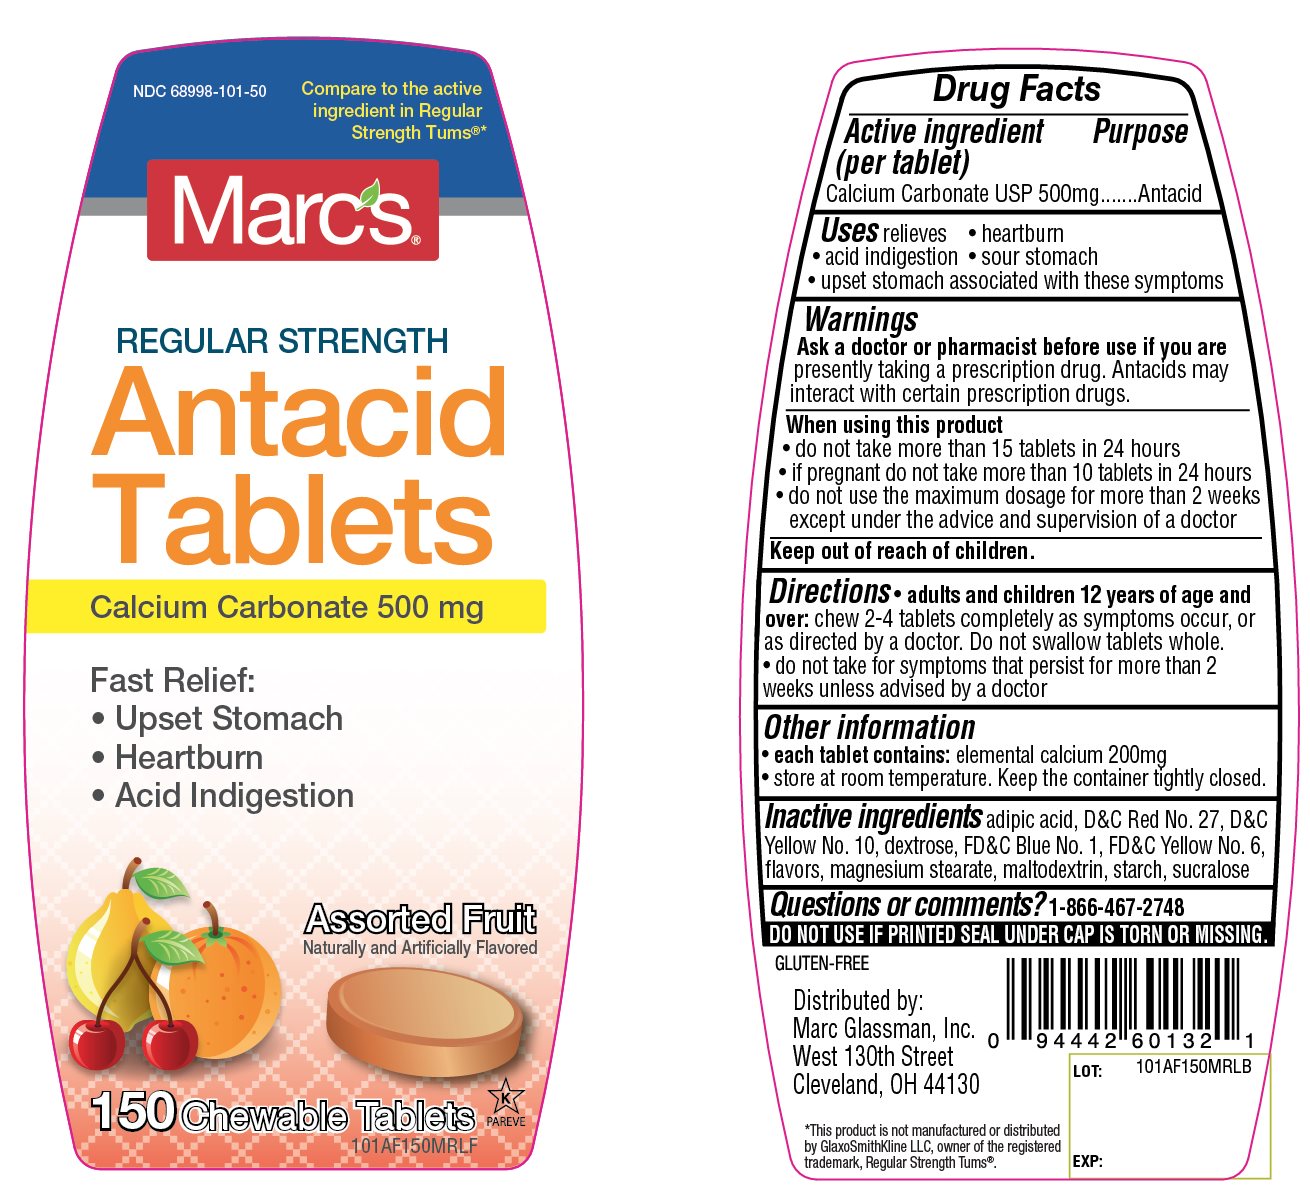 Marc Glassman Assorted Fruit Antacid 150 Chewable Tablets